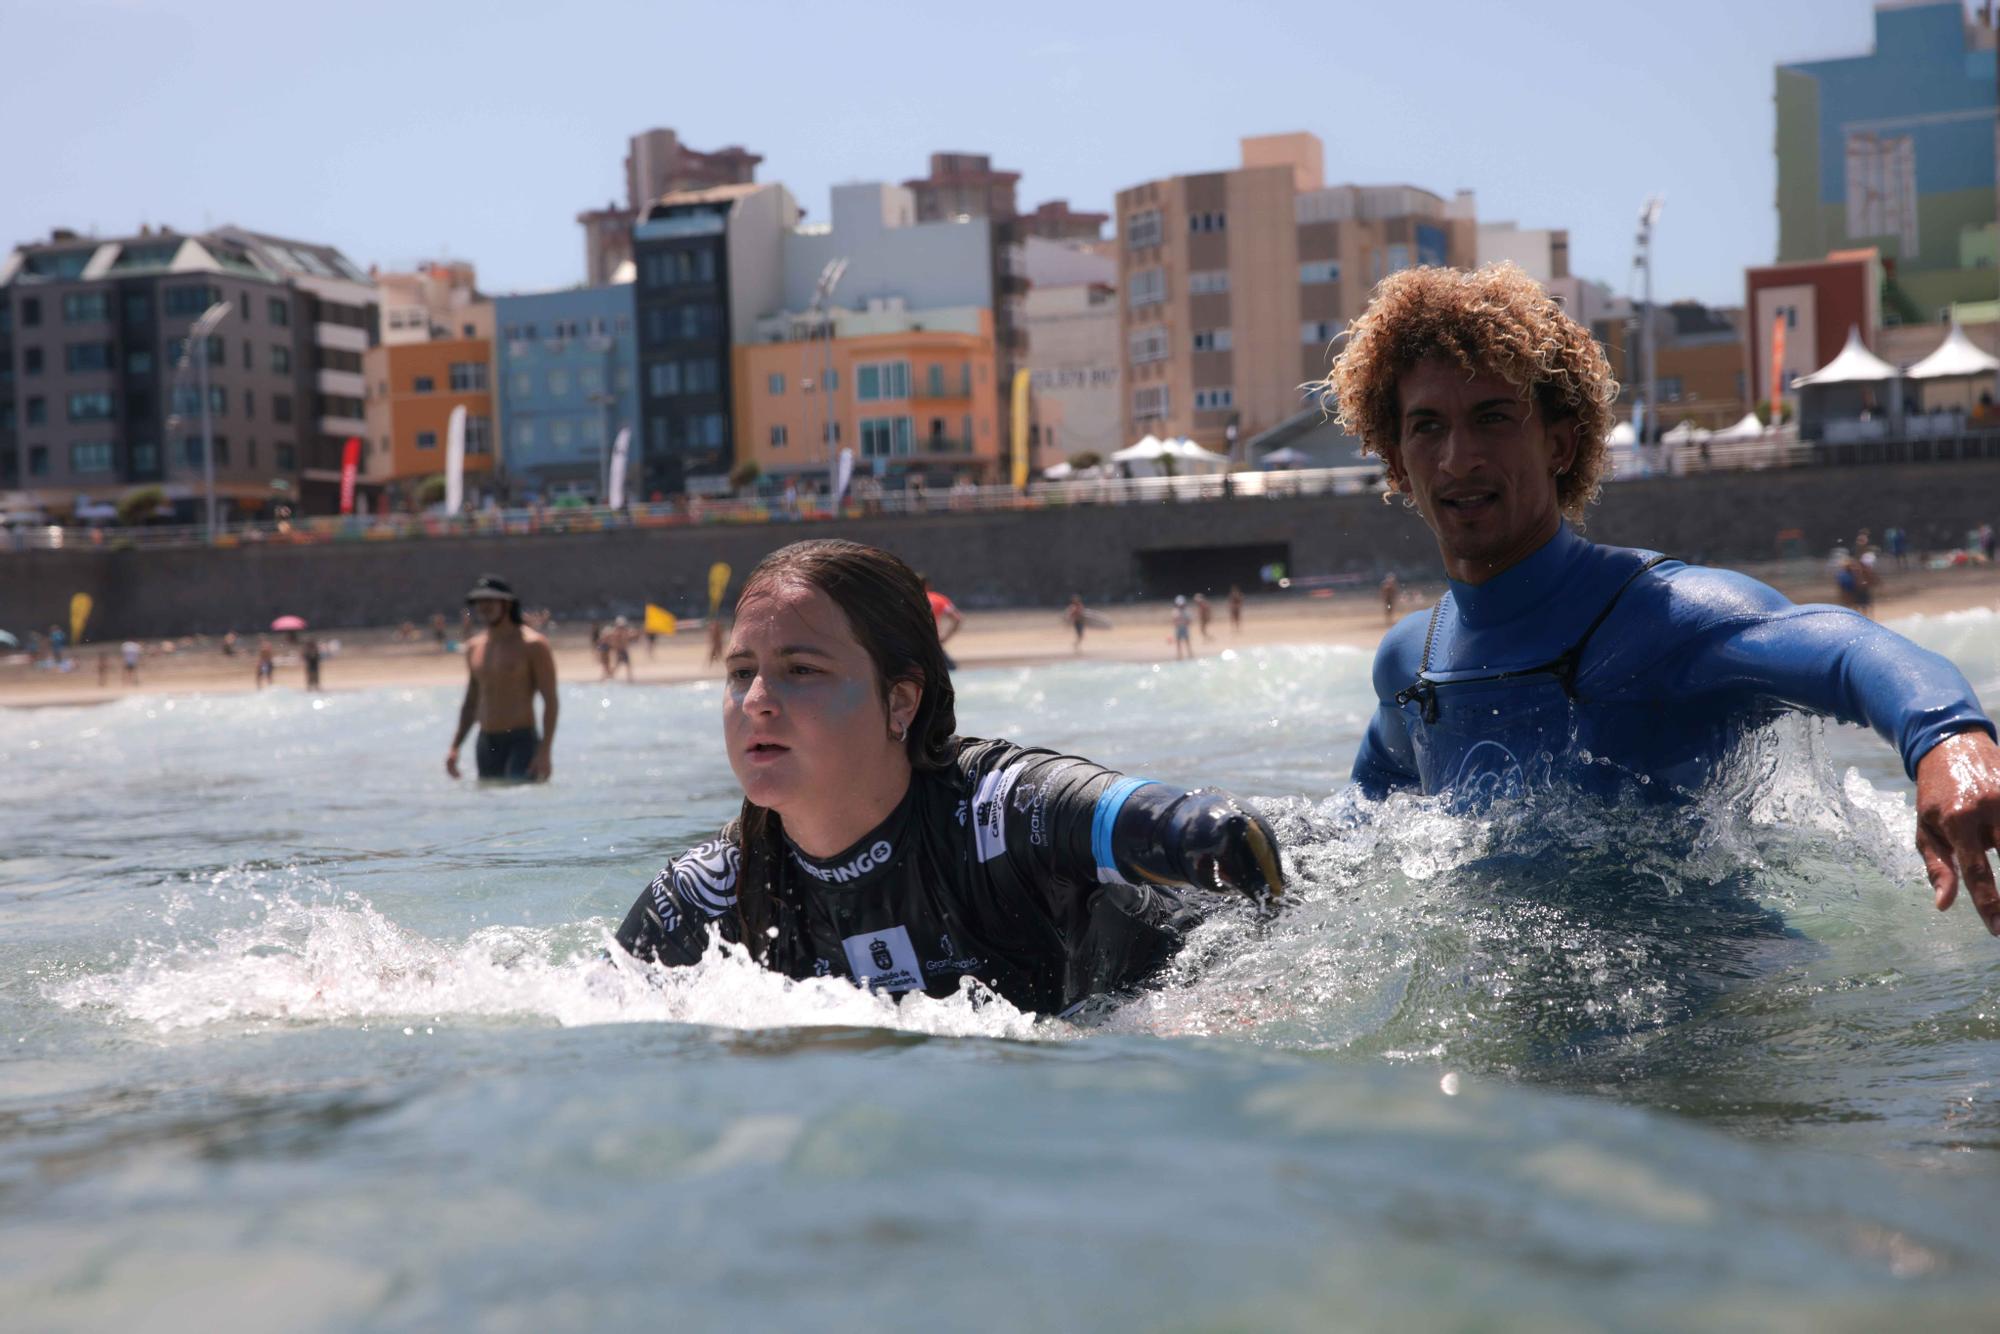 Gurrutxaga, Muller, Almagro, Francesena y Souto, los vencedores de la II LPA Surf City No Limit Fundación Disa